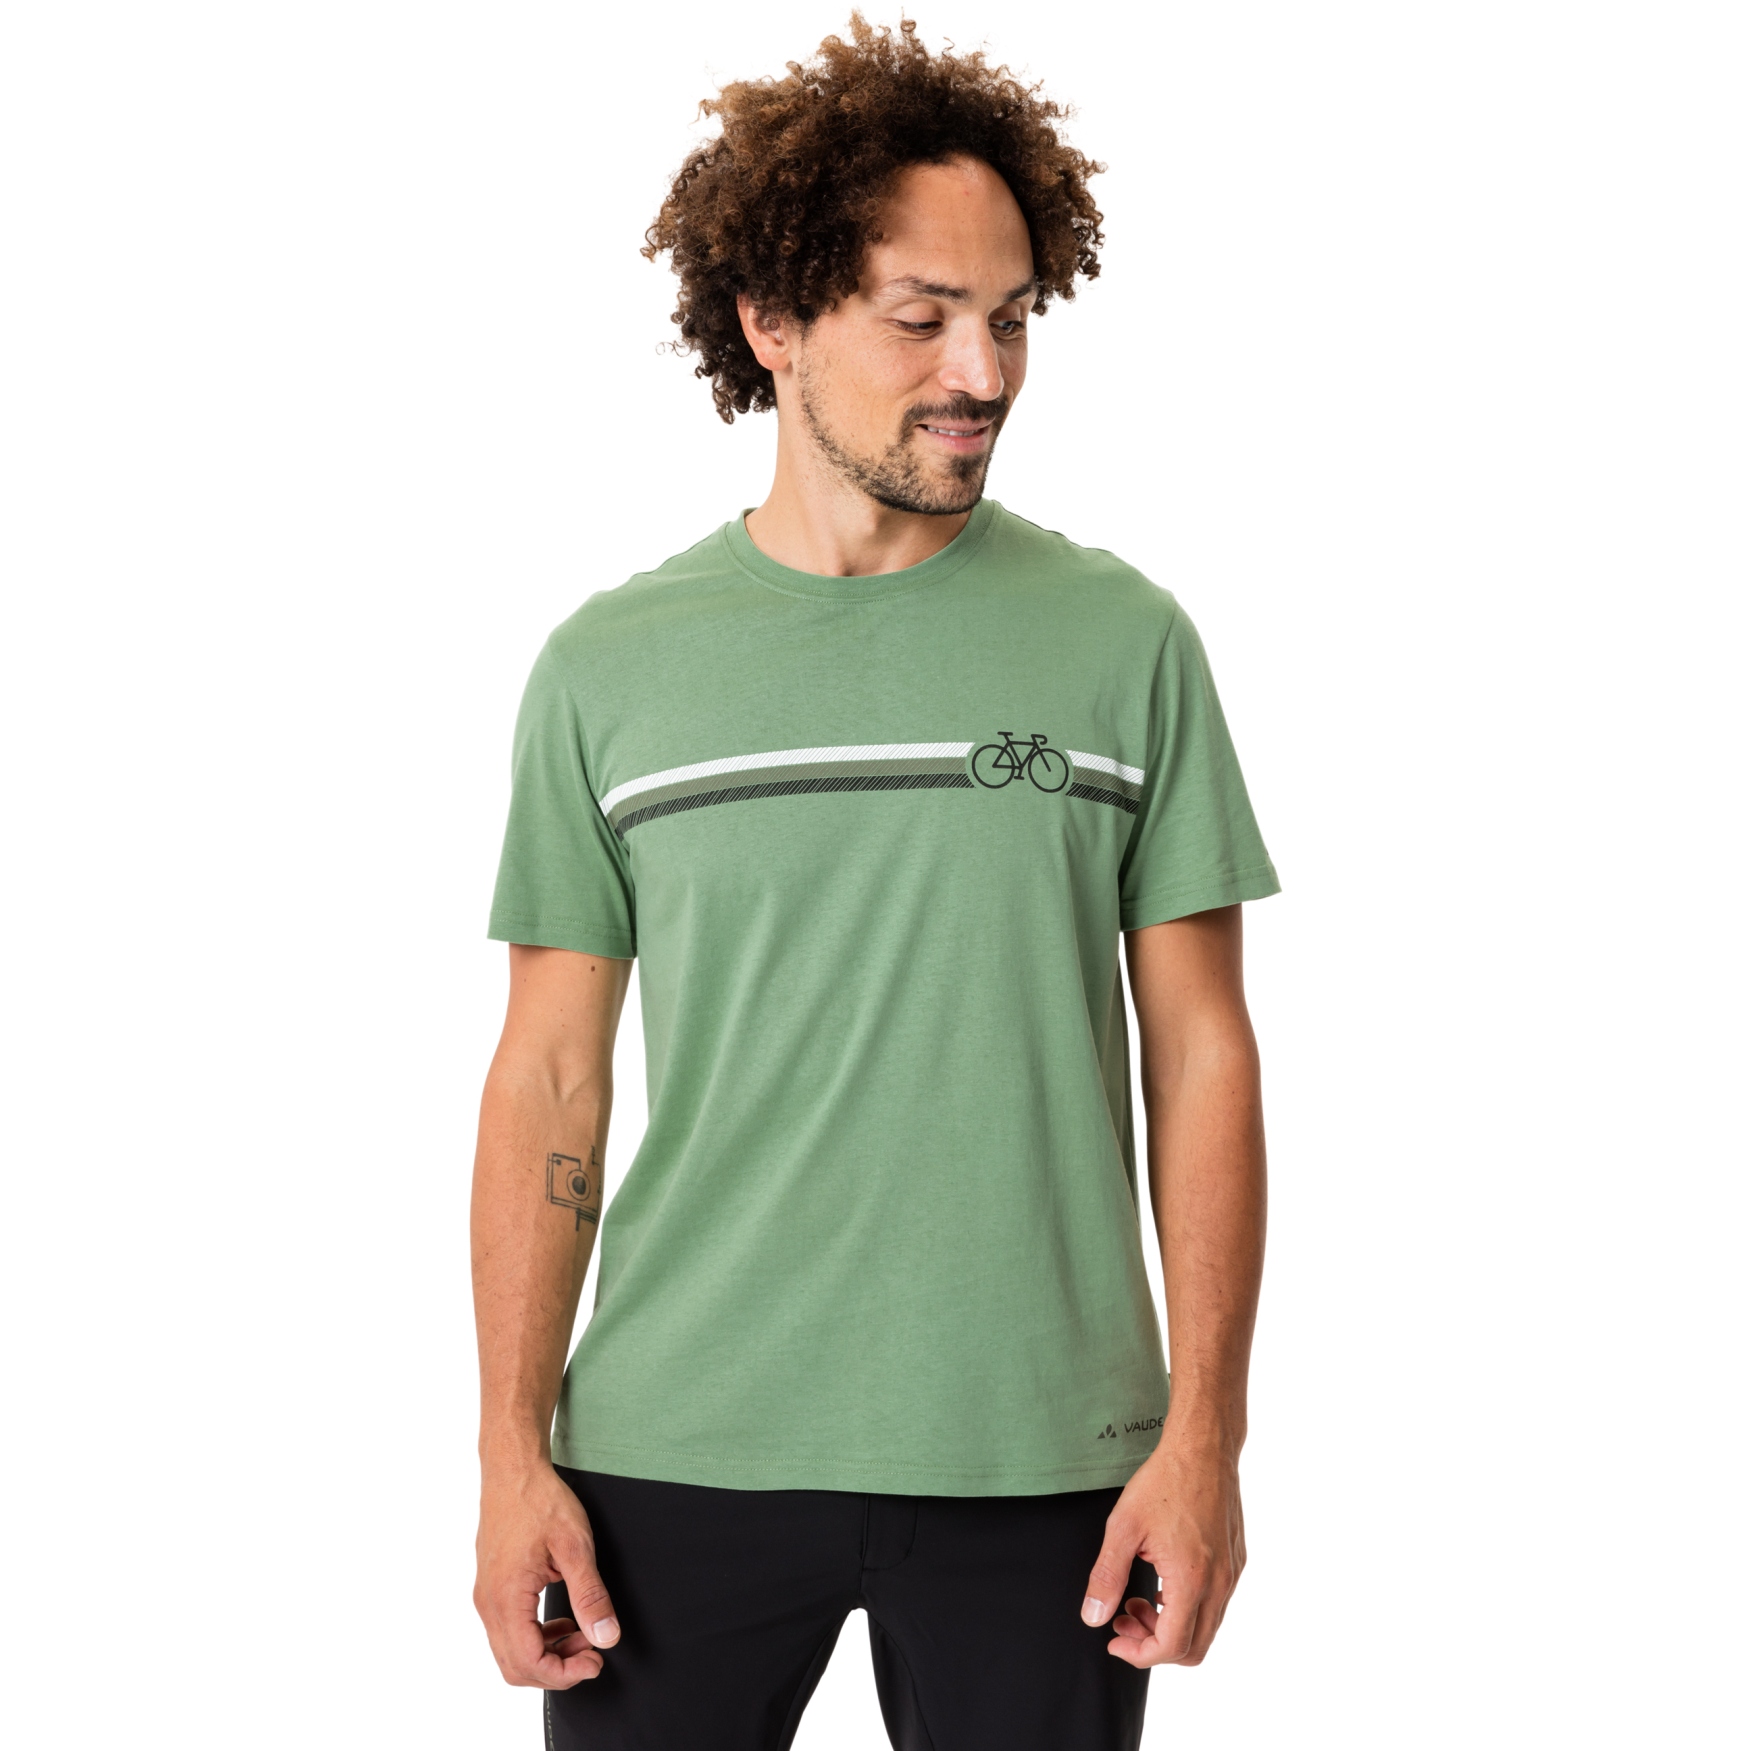 Produktbild von Vaude Cyclist V T-Shirt Herren - willow green